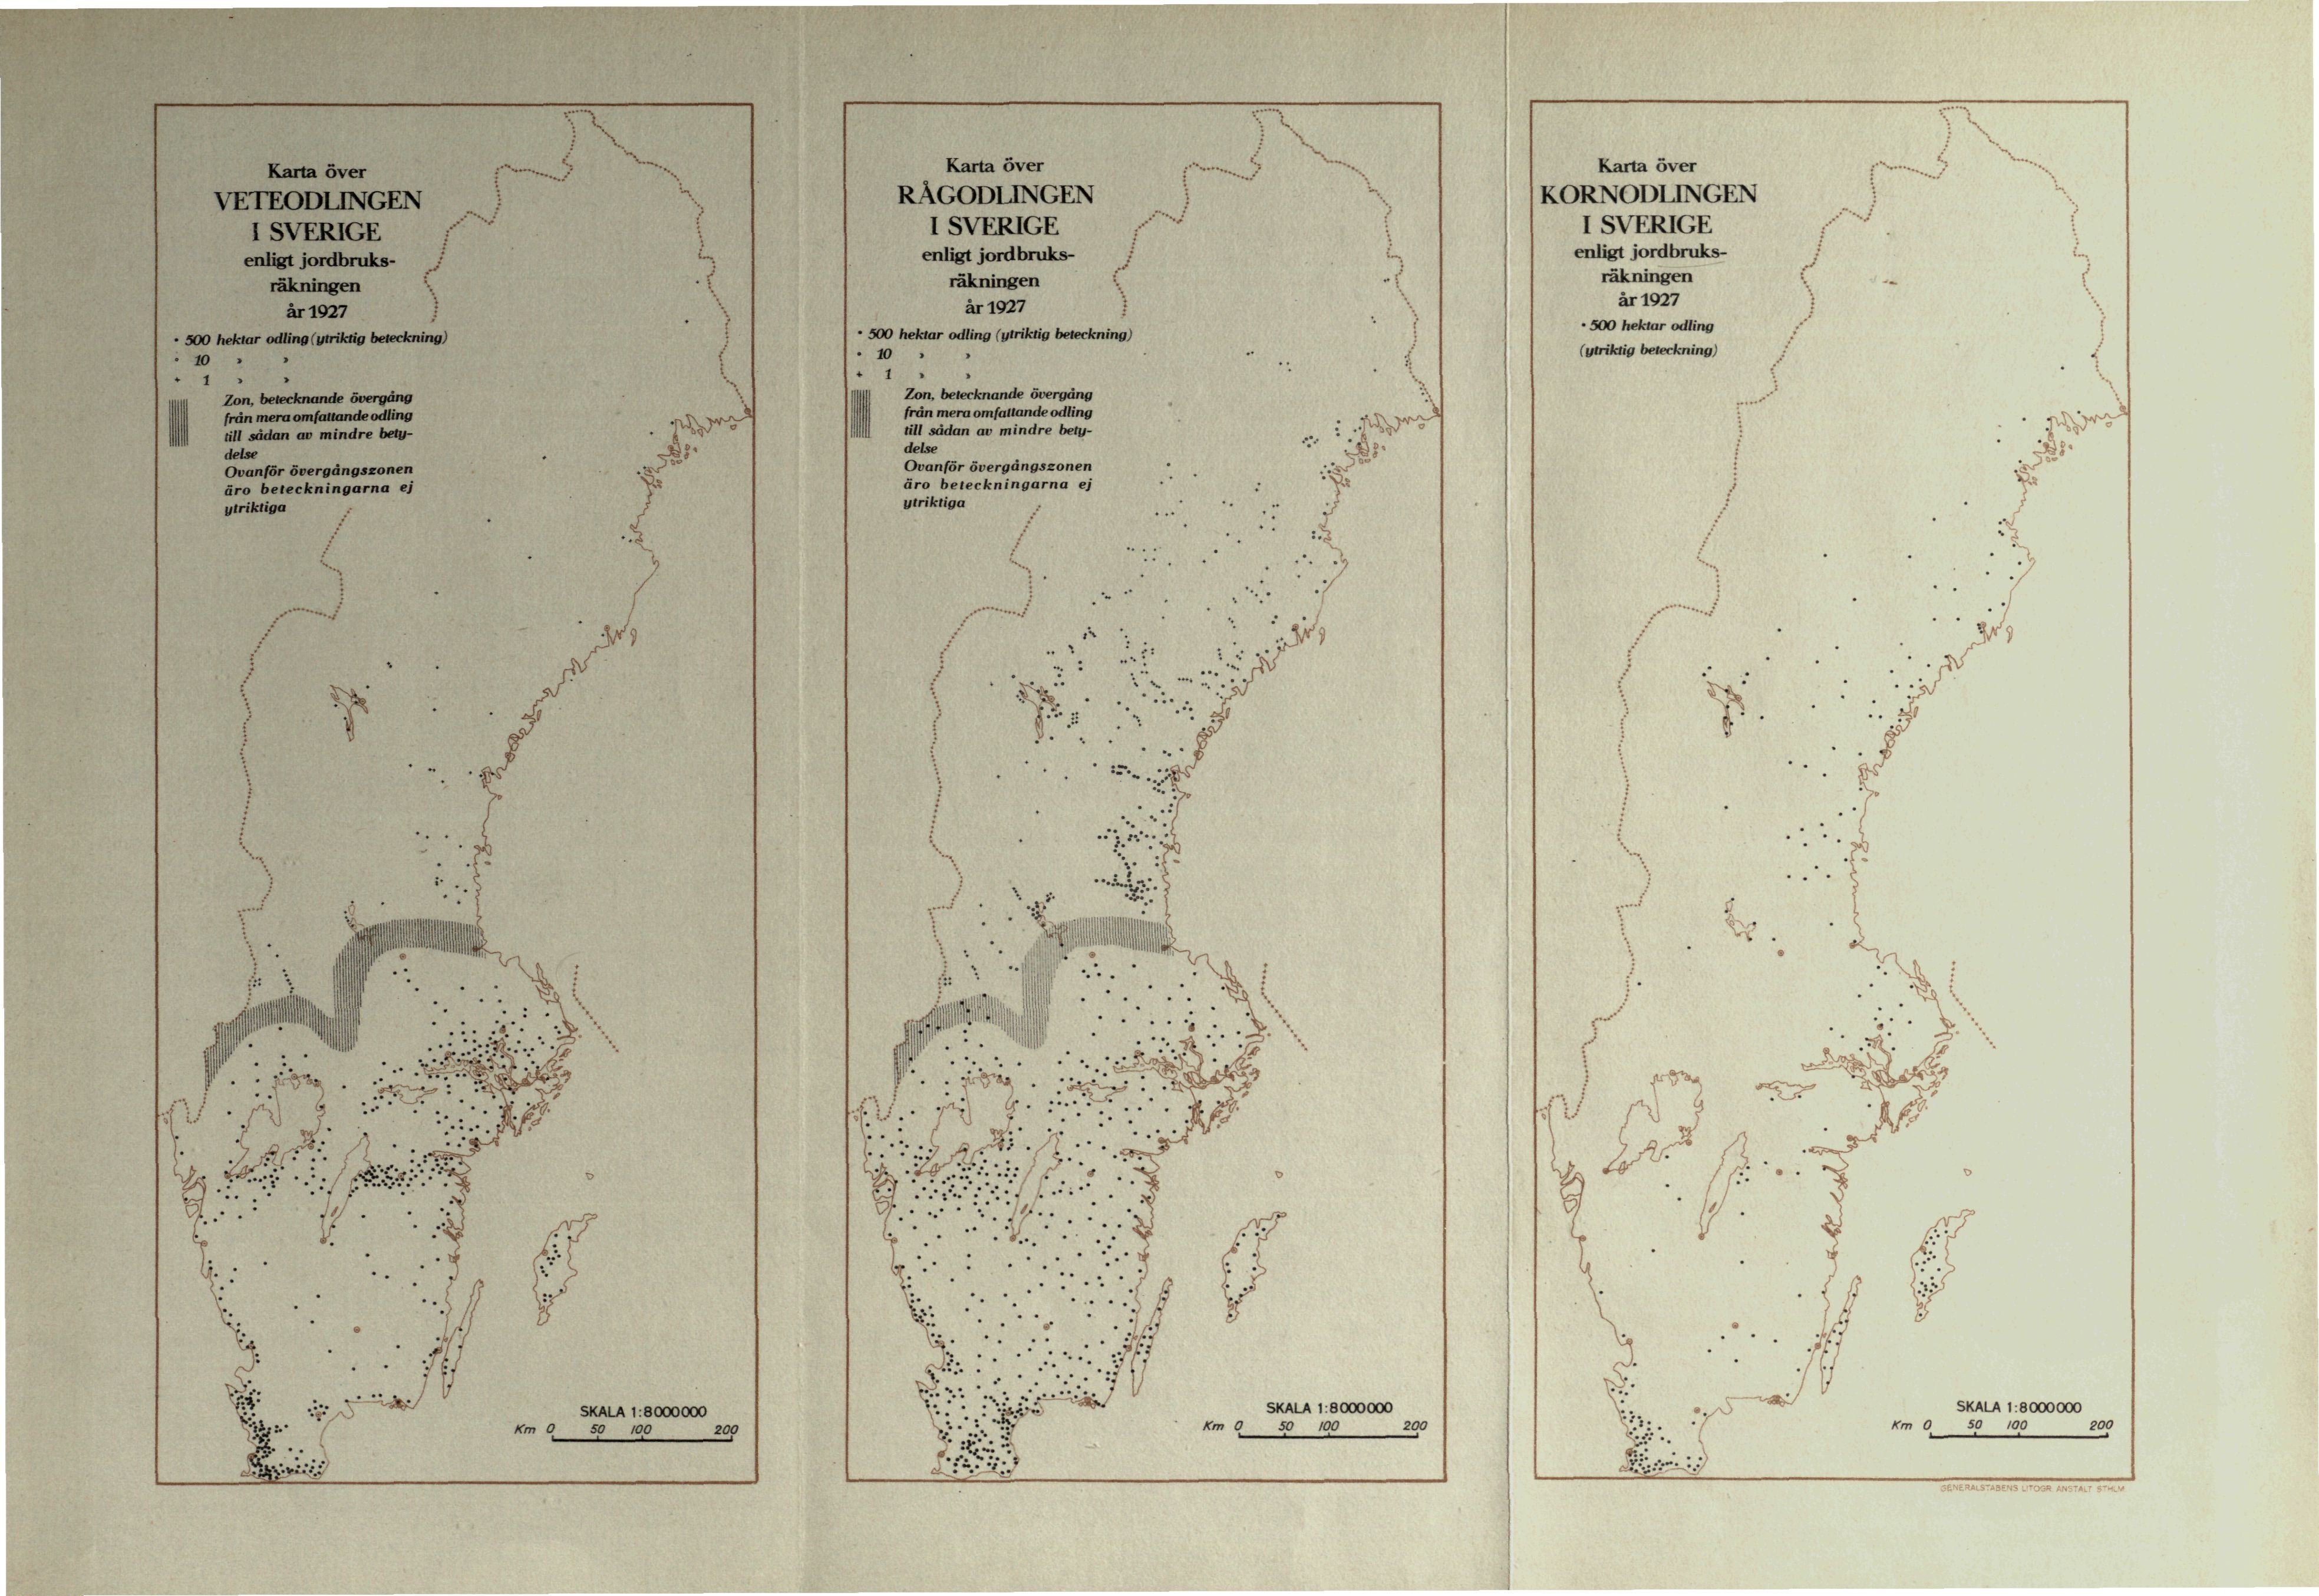 Karta över Karta över Karta över VETEODLINGEN I SVERIGE RÅGODLINGEN I SVERIGE KORNODLINGEN I SVERIGE